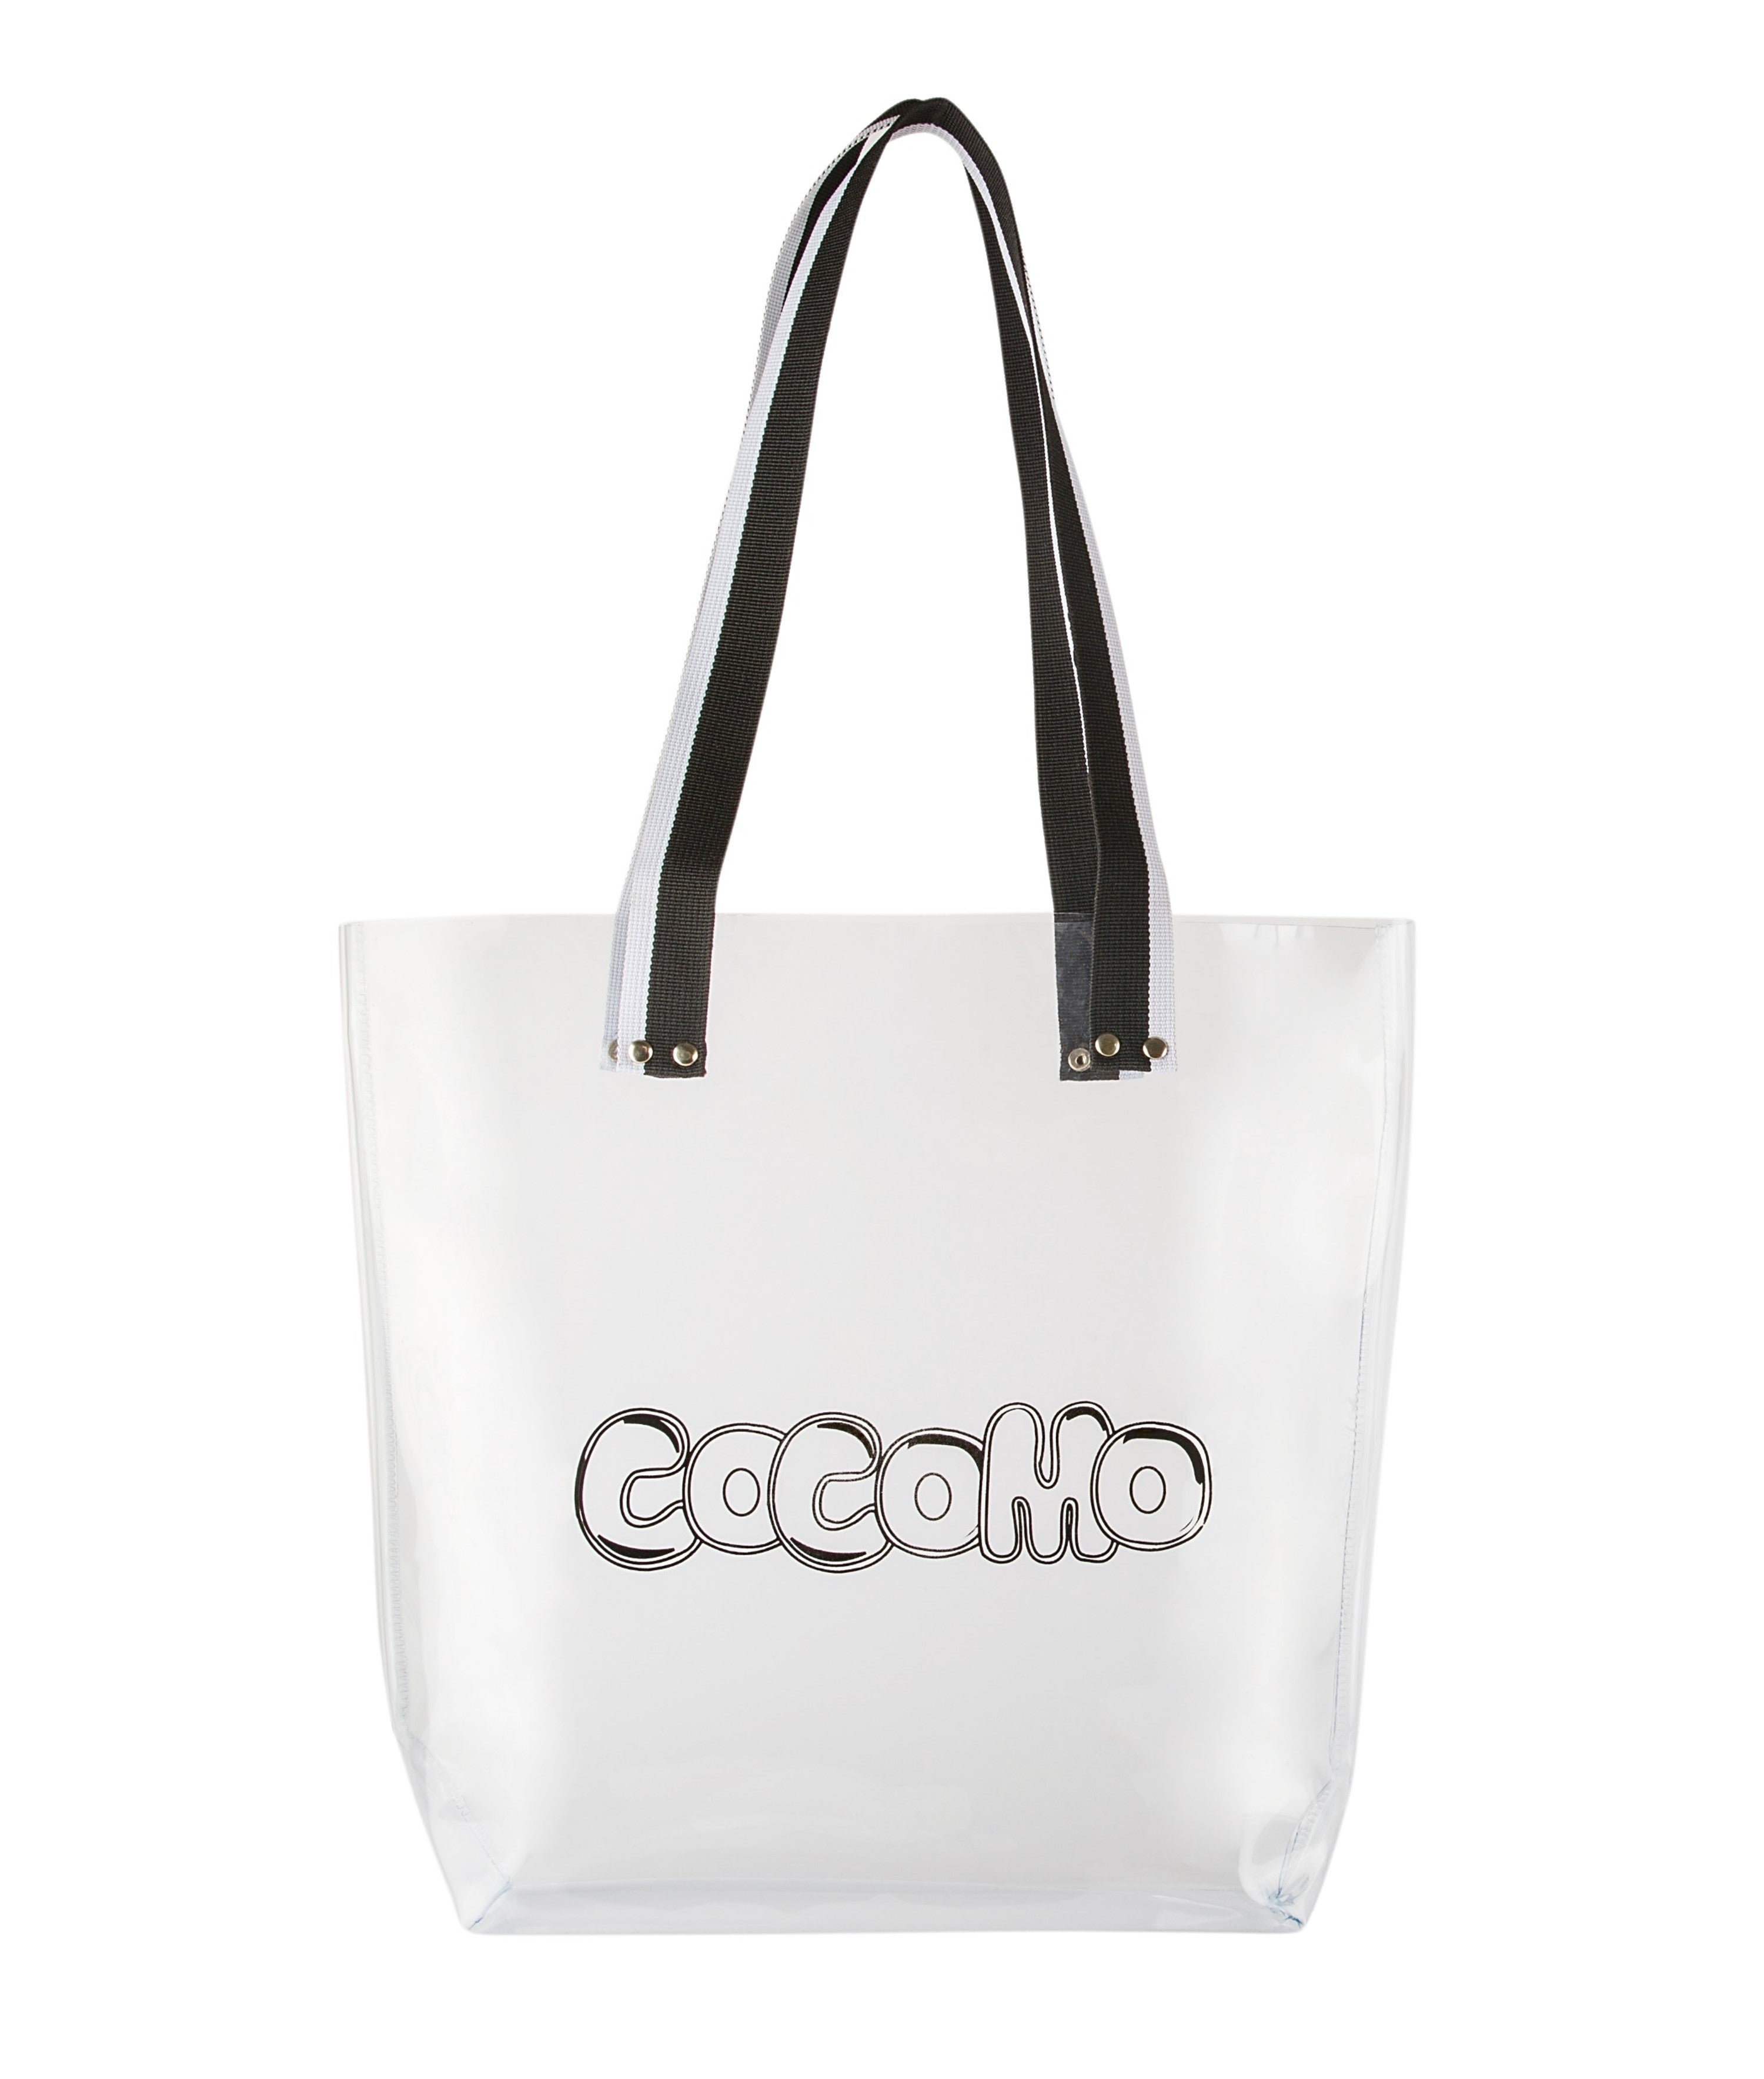 Coco Tote Bag